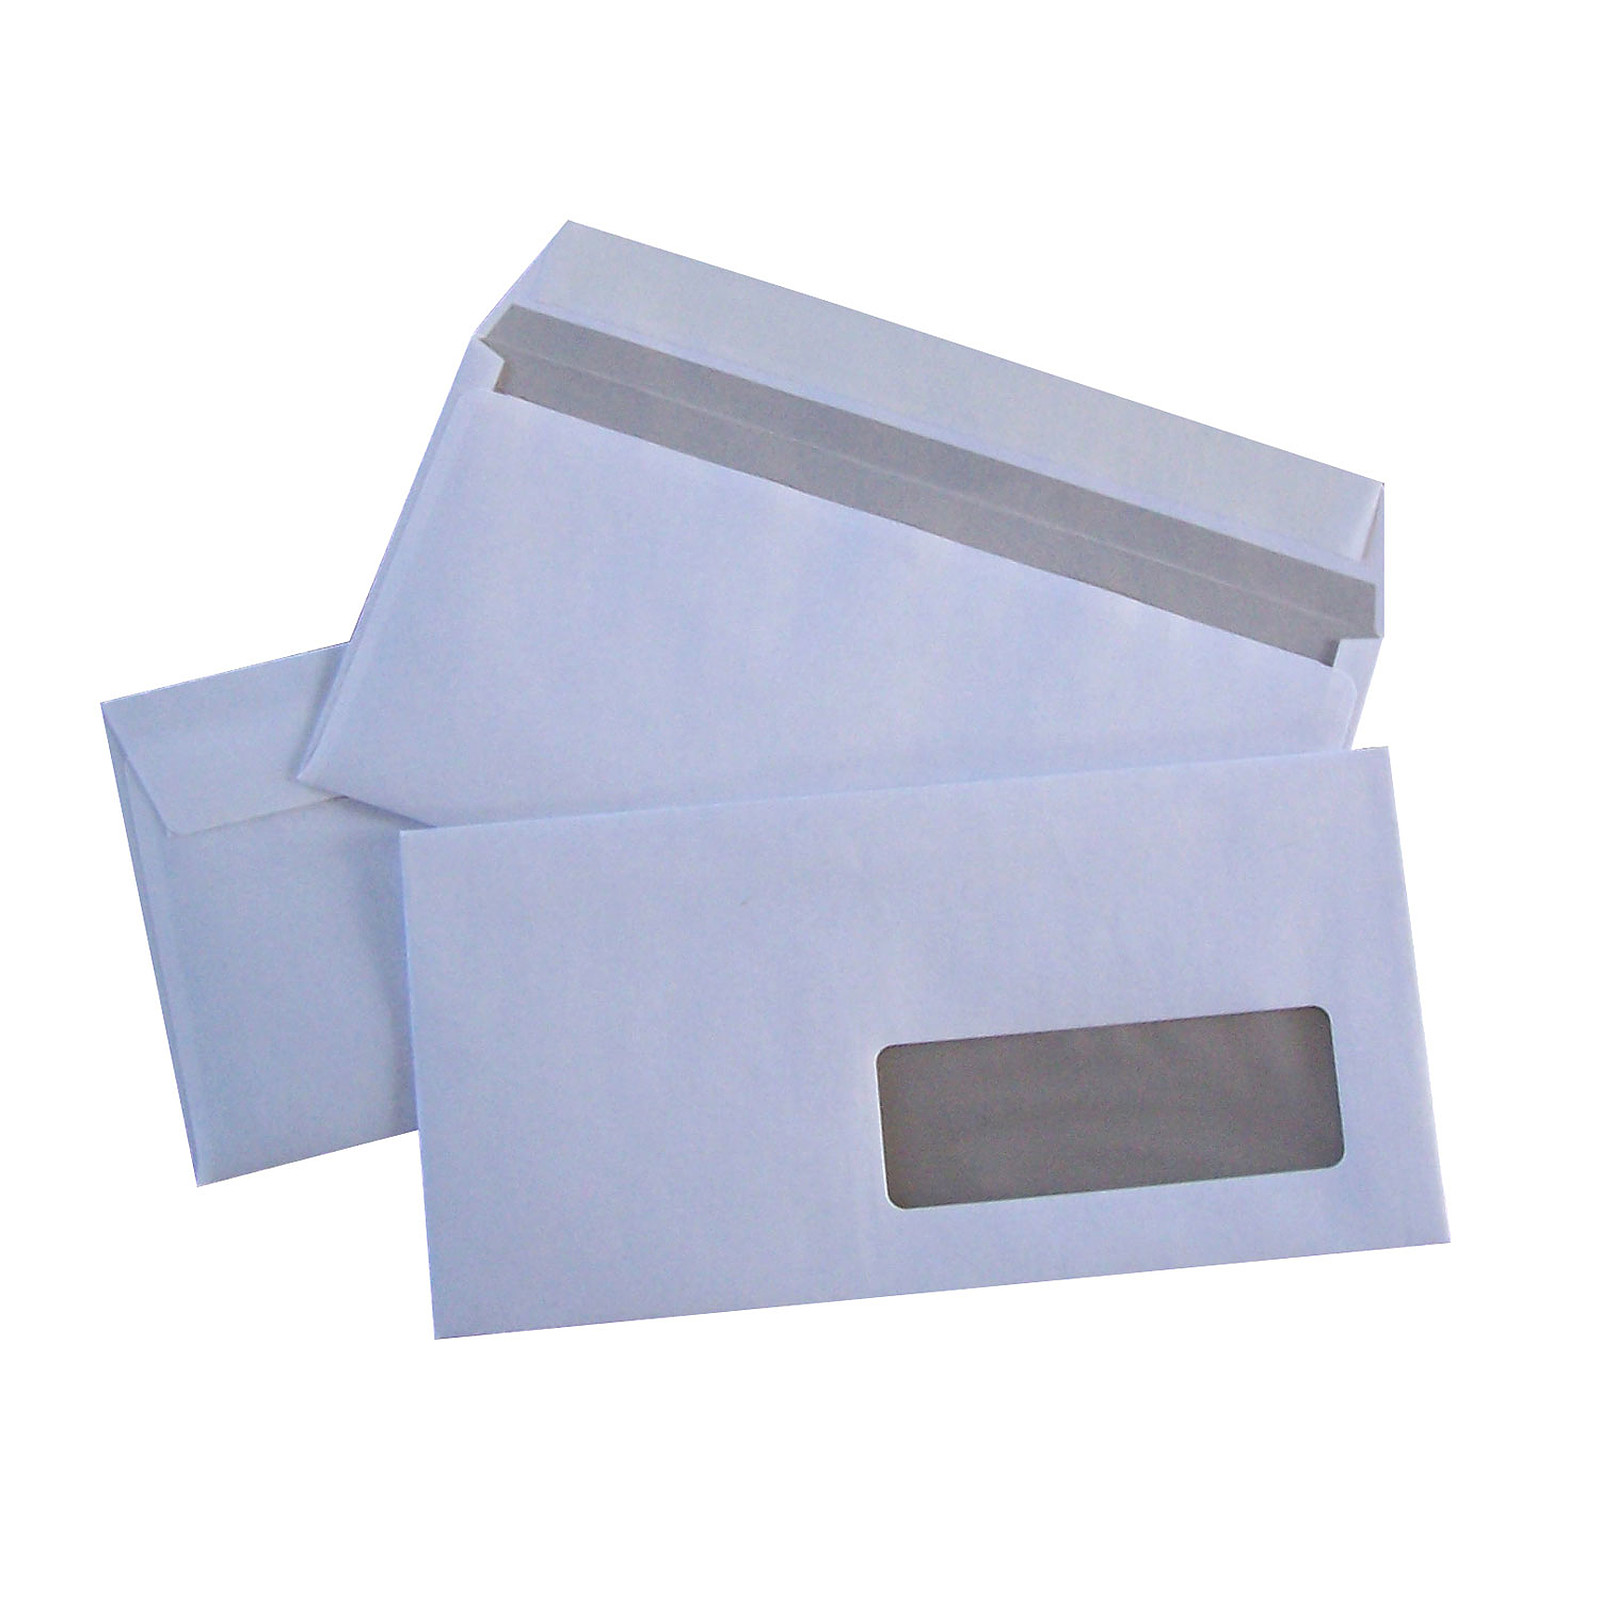 500 enveloppes DL auto-adhesives 80G fenetre 35x100 - Enveloppe Generique